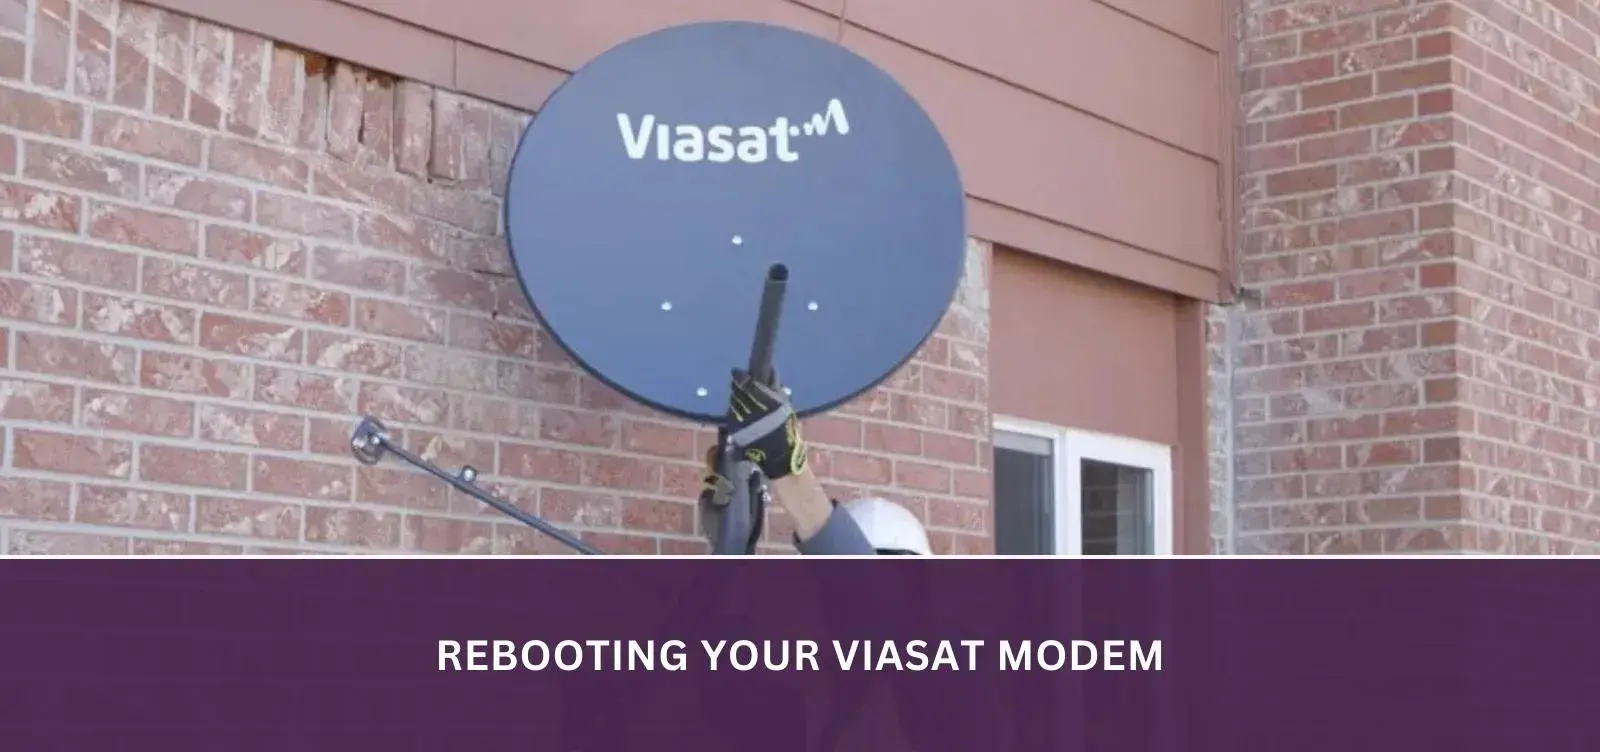 Rebooting your Viasat modem